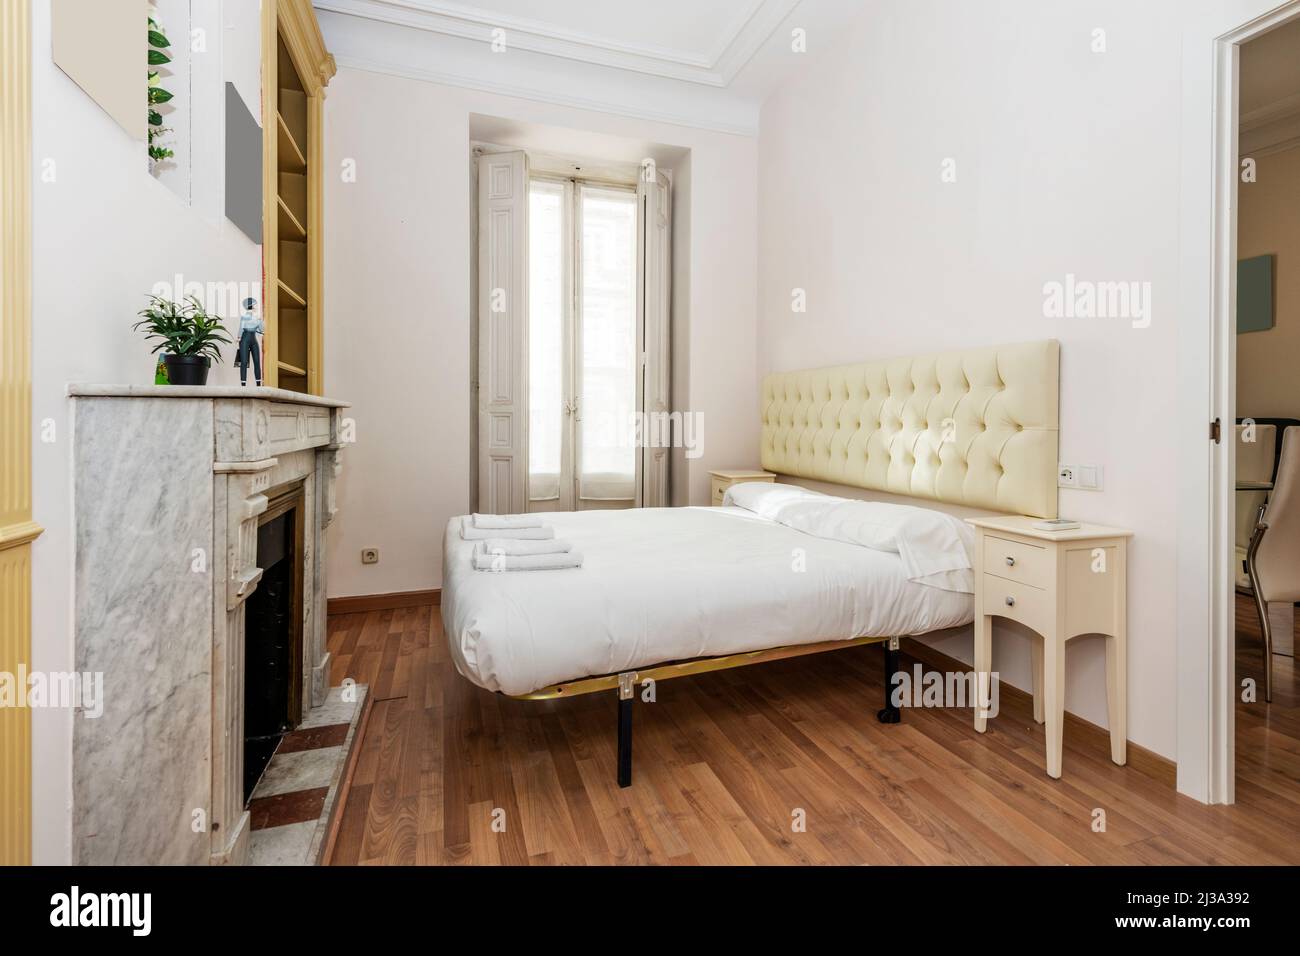 Camera da letto con letto matrimoniale con testiera color crema rivestita in stile capitone e caminetto in marmo bianco Foto Stock